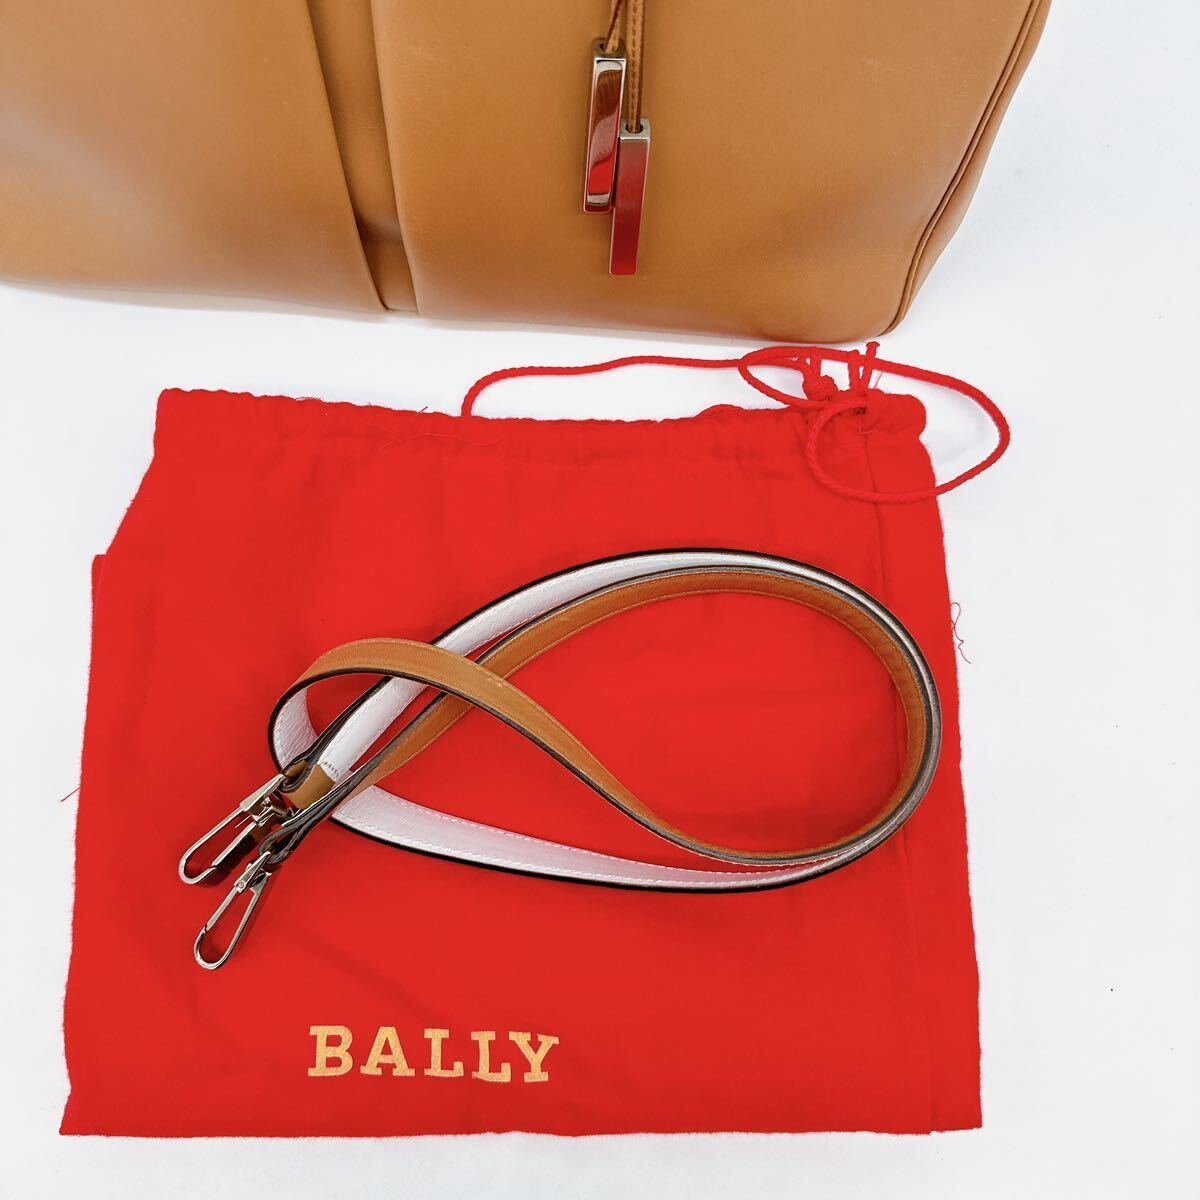  превосходный товар BALLY Bally 2way большая сумка рука плечо наклонный .. мужской бизнес Logo кожа B металлические принадлежности tore spo полоса красный A40